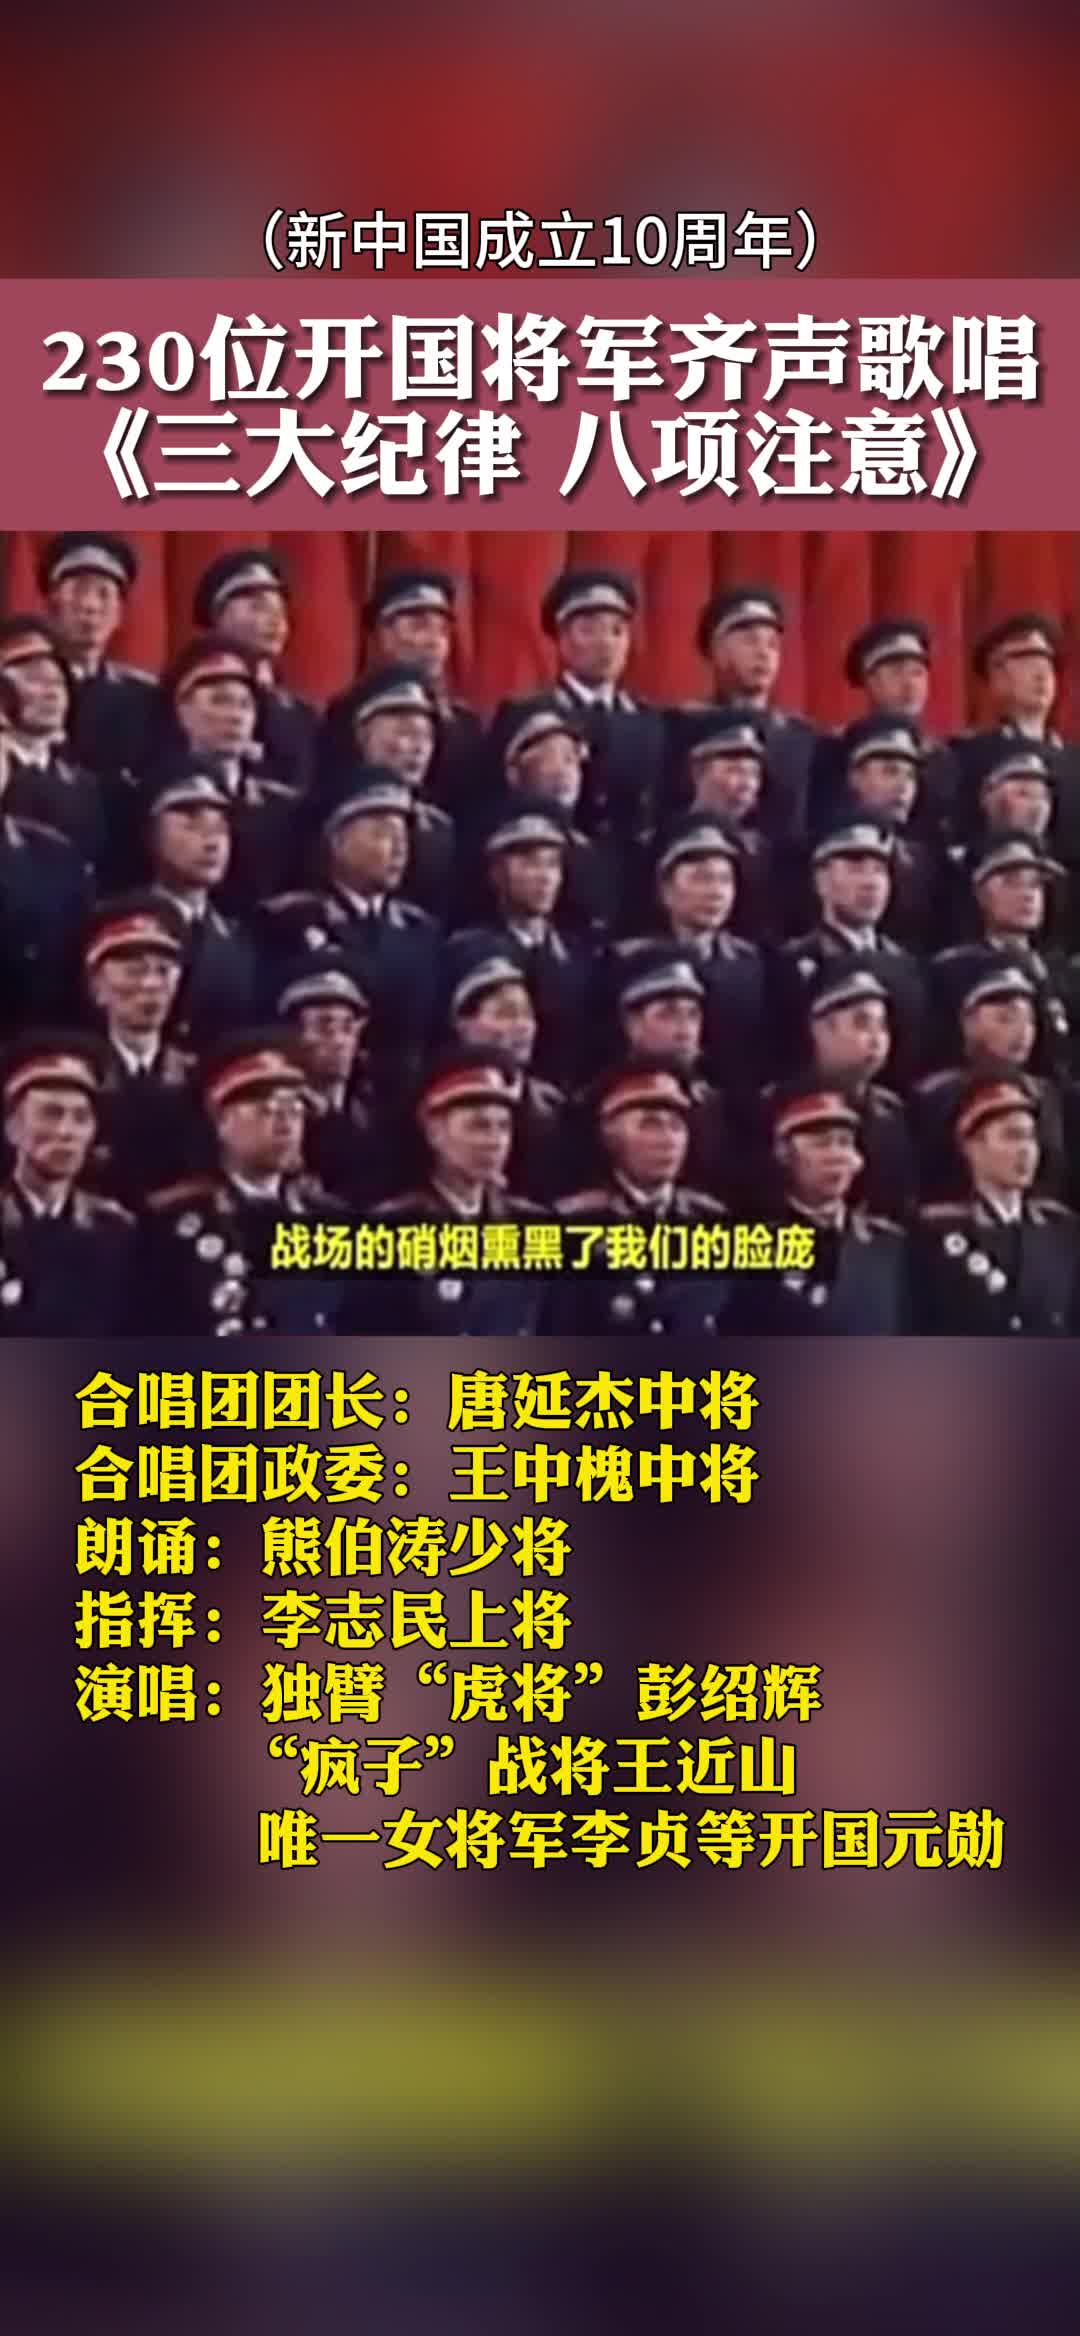 新中国成立10周年，230位开国将军齐声歌词《三大纪律 八项注意》